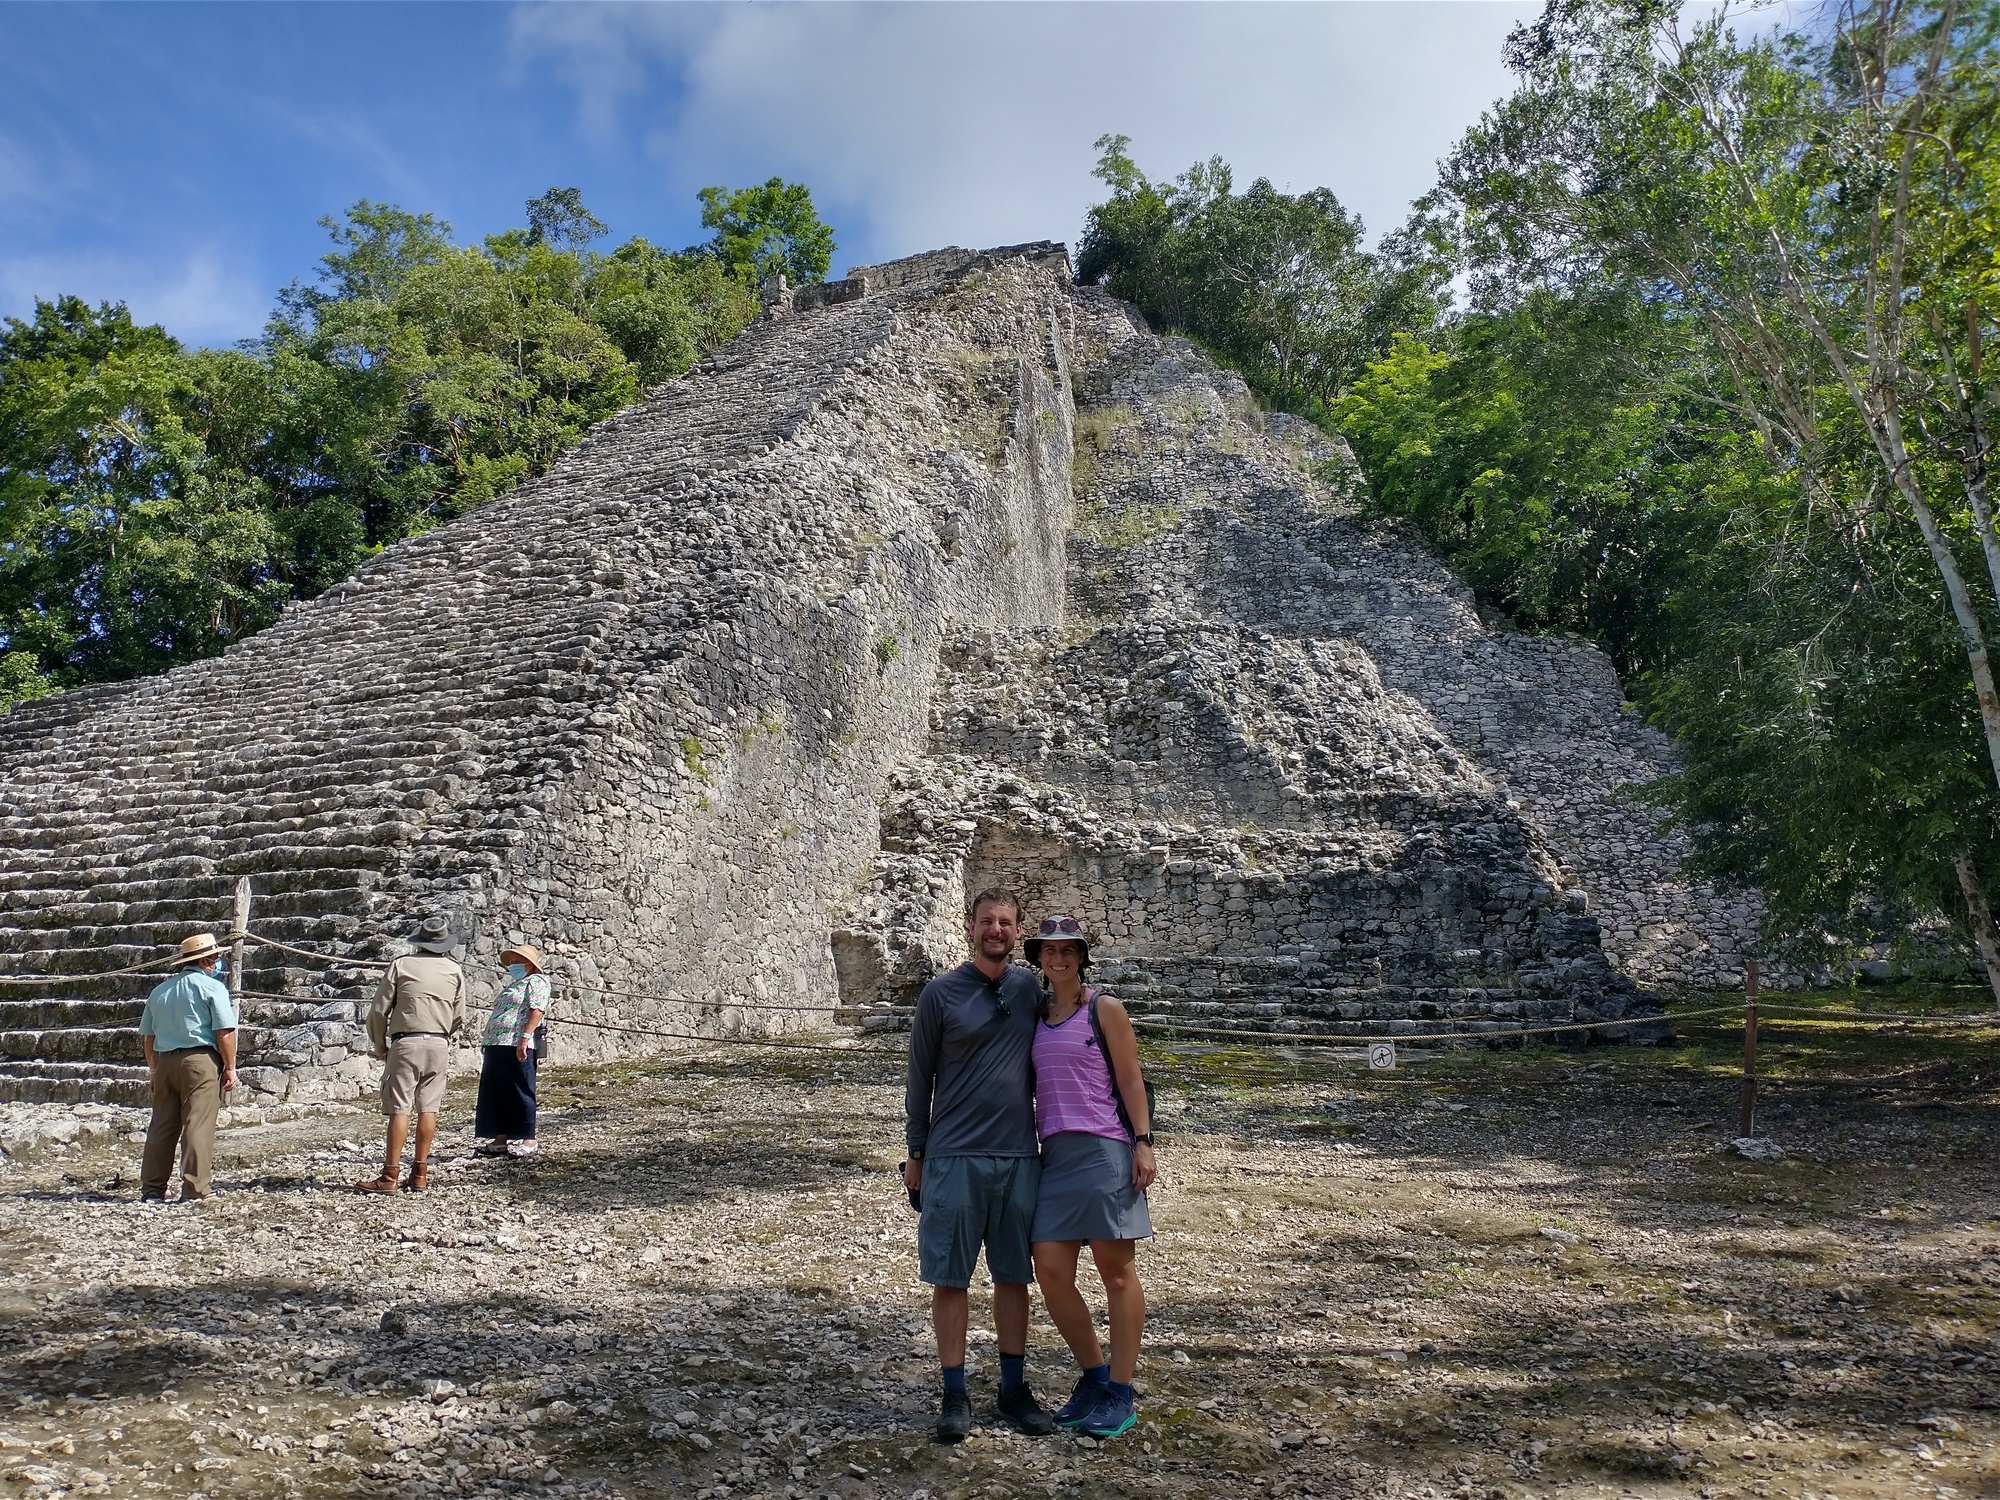 Us at the Ancient Maya city Coba, pronounced c-b